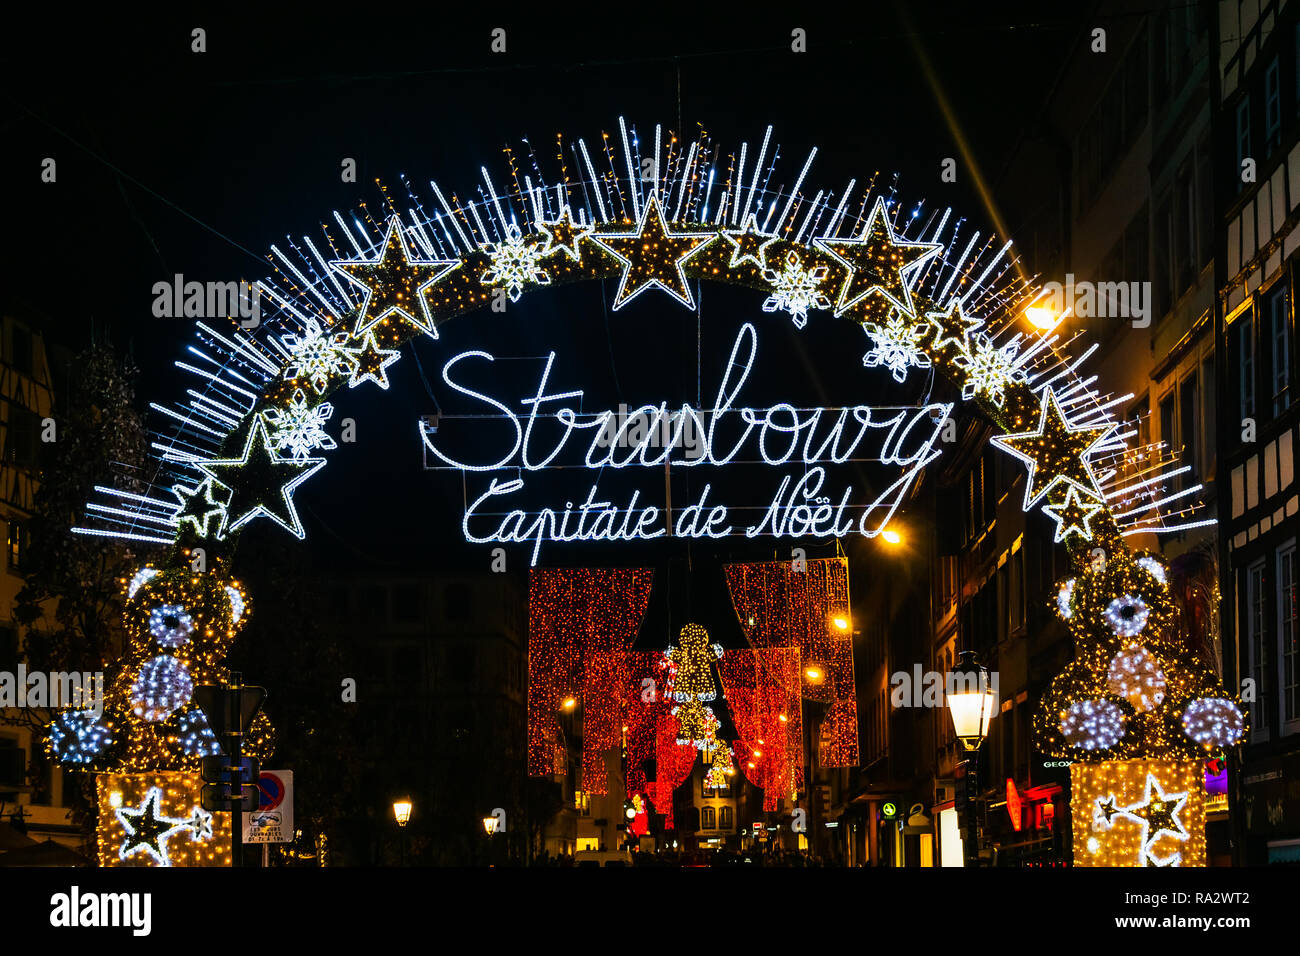 Portail d'entrée à Arc lumineux de la capitale de Noël Strasbourg de nuit accueil des touristes lors du traditionnel marché de Noël , Alsace, France. Banque D'Images